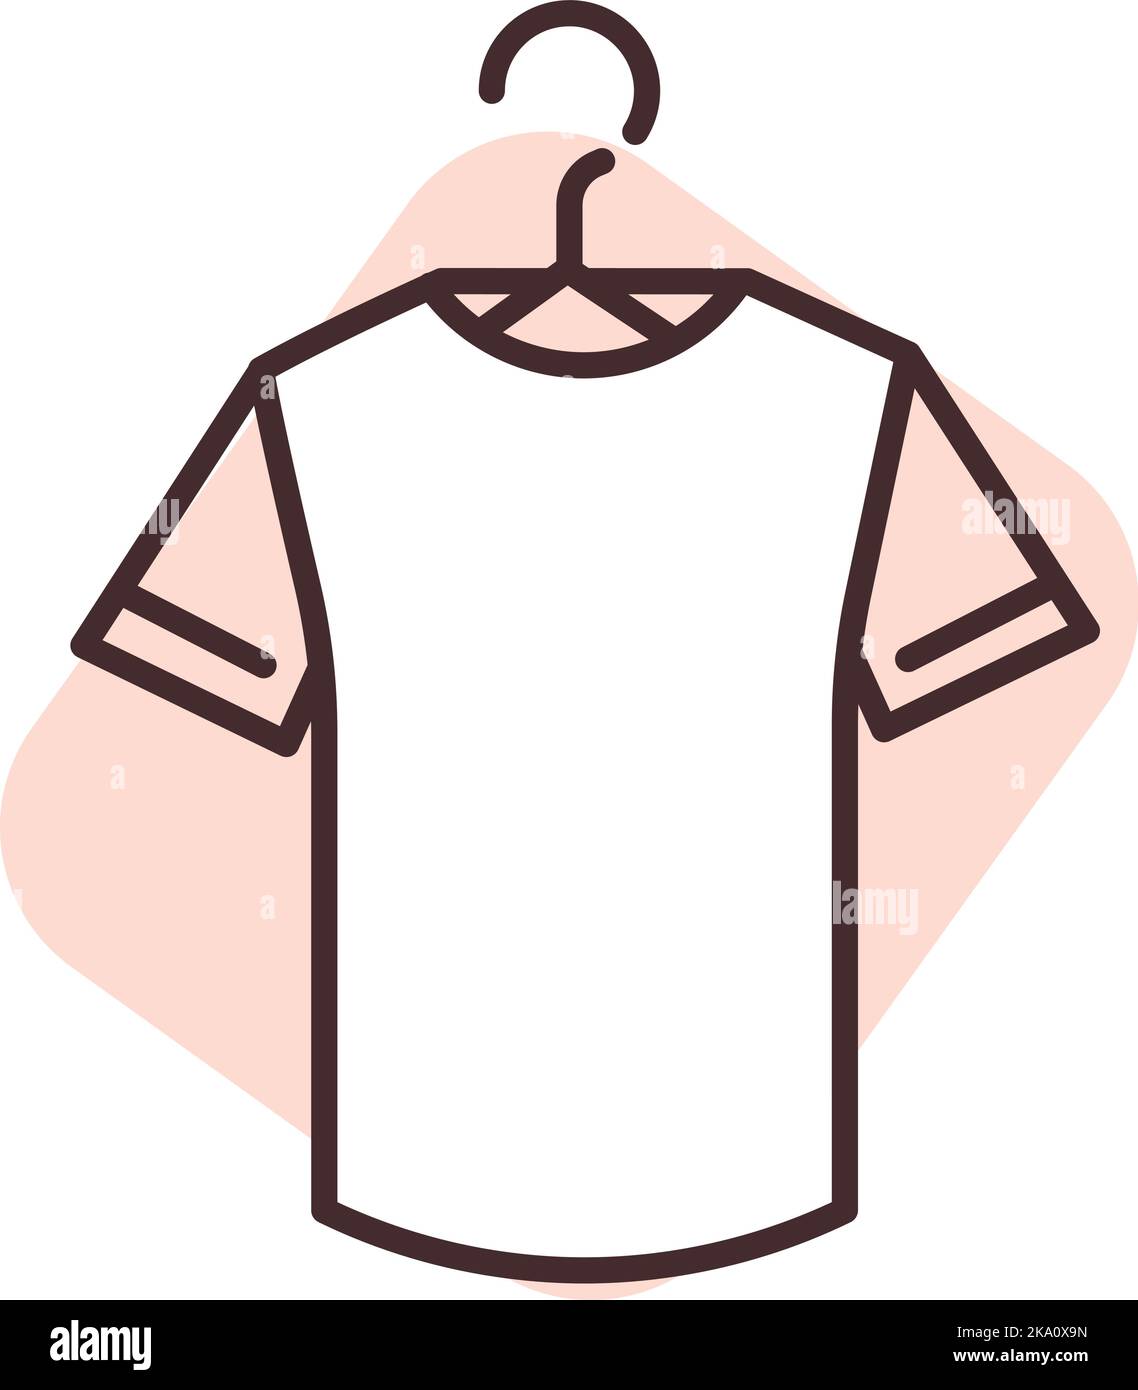 Nettoyage des chemises, illustration ou icône, vecteur sur fond blanc. Illustration de Vecteur